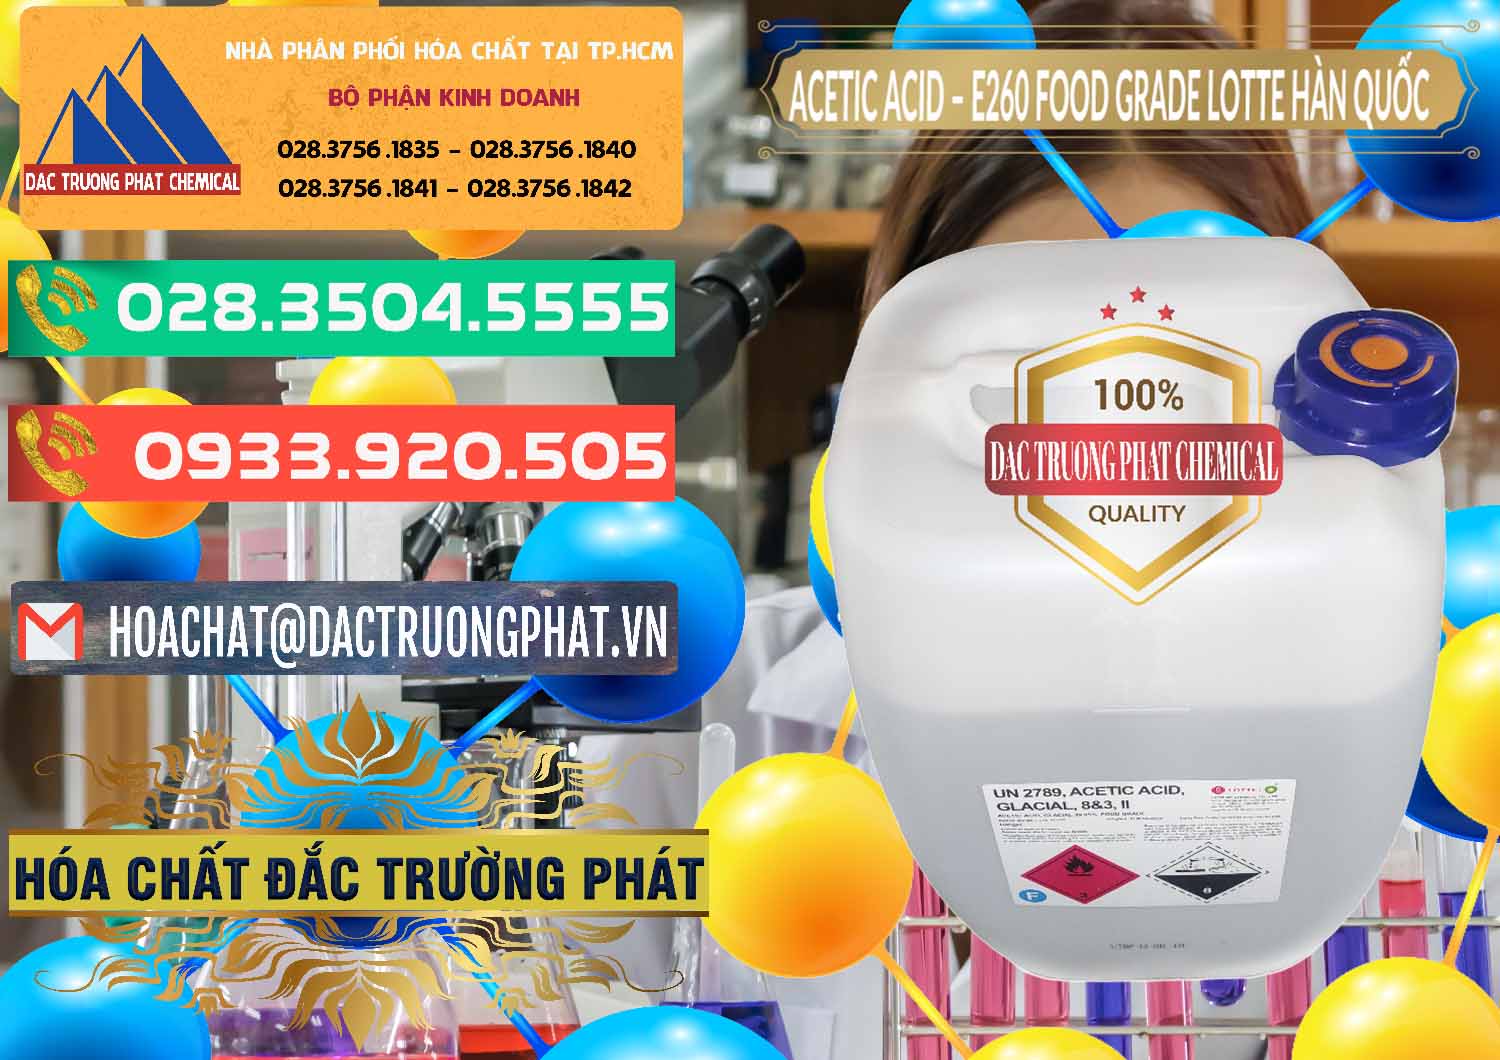 Nơi kinh doanh và bán Acetic Acid – Axit Acetic E260 Food Grade Hàn Quốc Lotte Korea - 0003 - Phân phối - bán hóa chất tại TP.HCM - congtyhoachat.com.vn